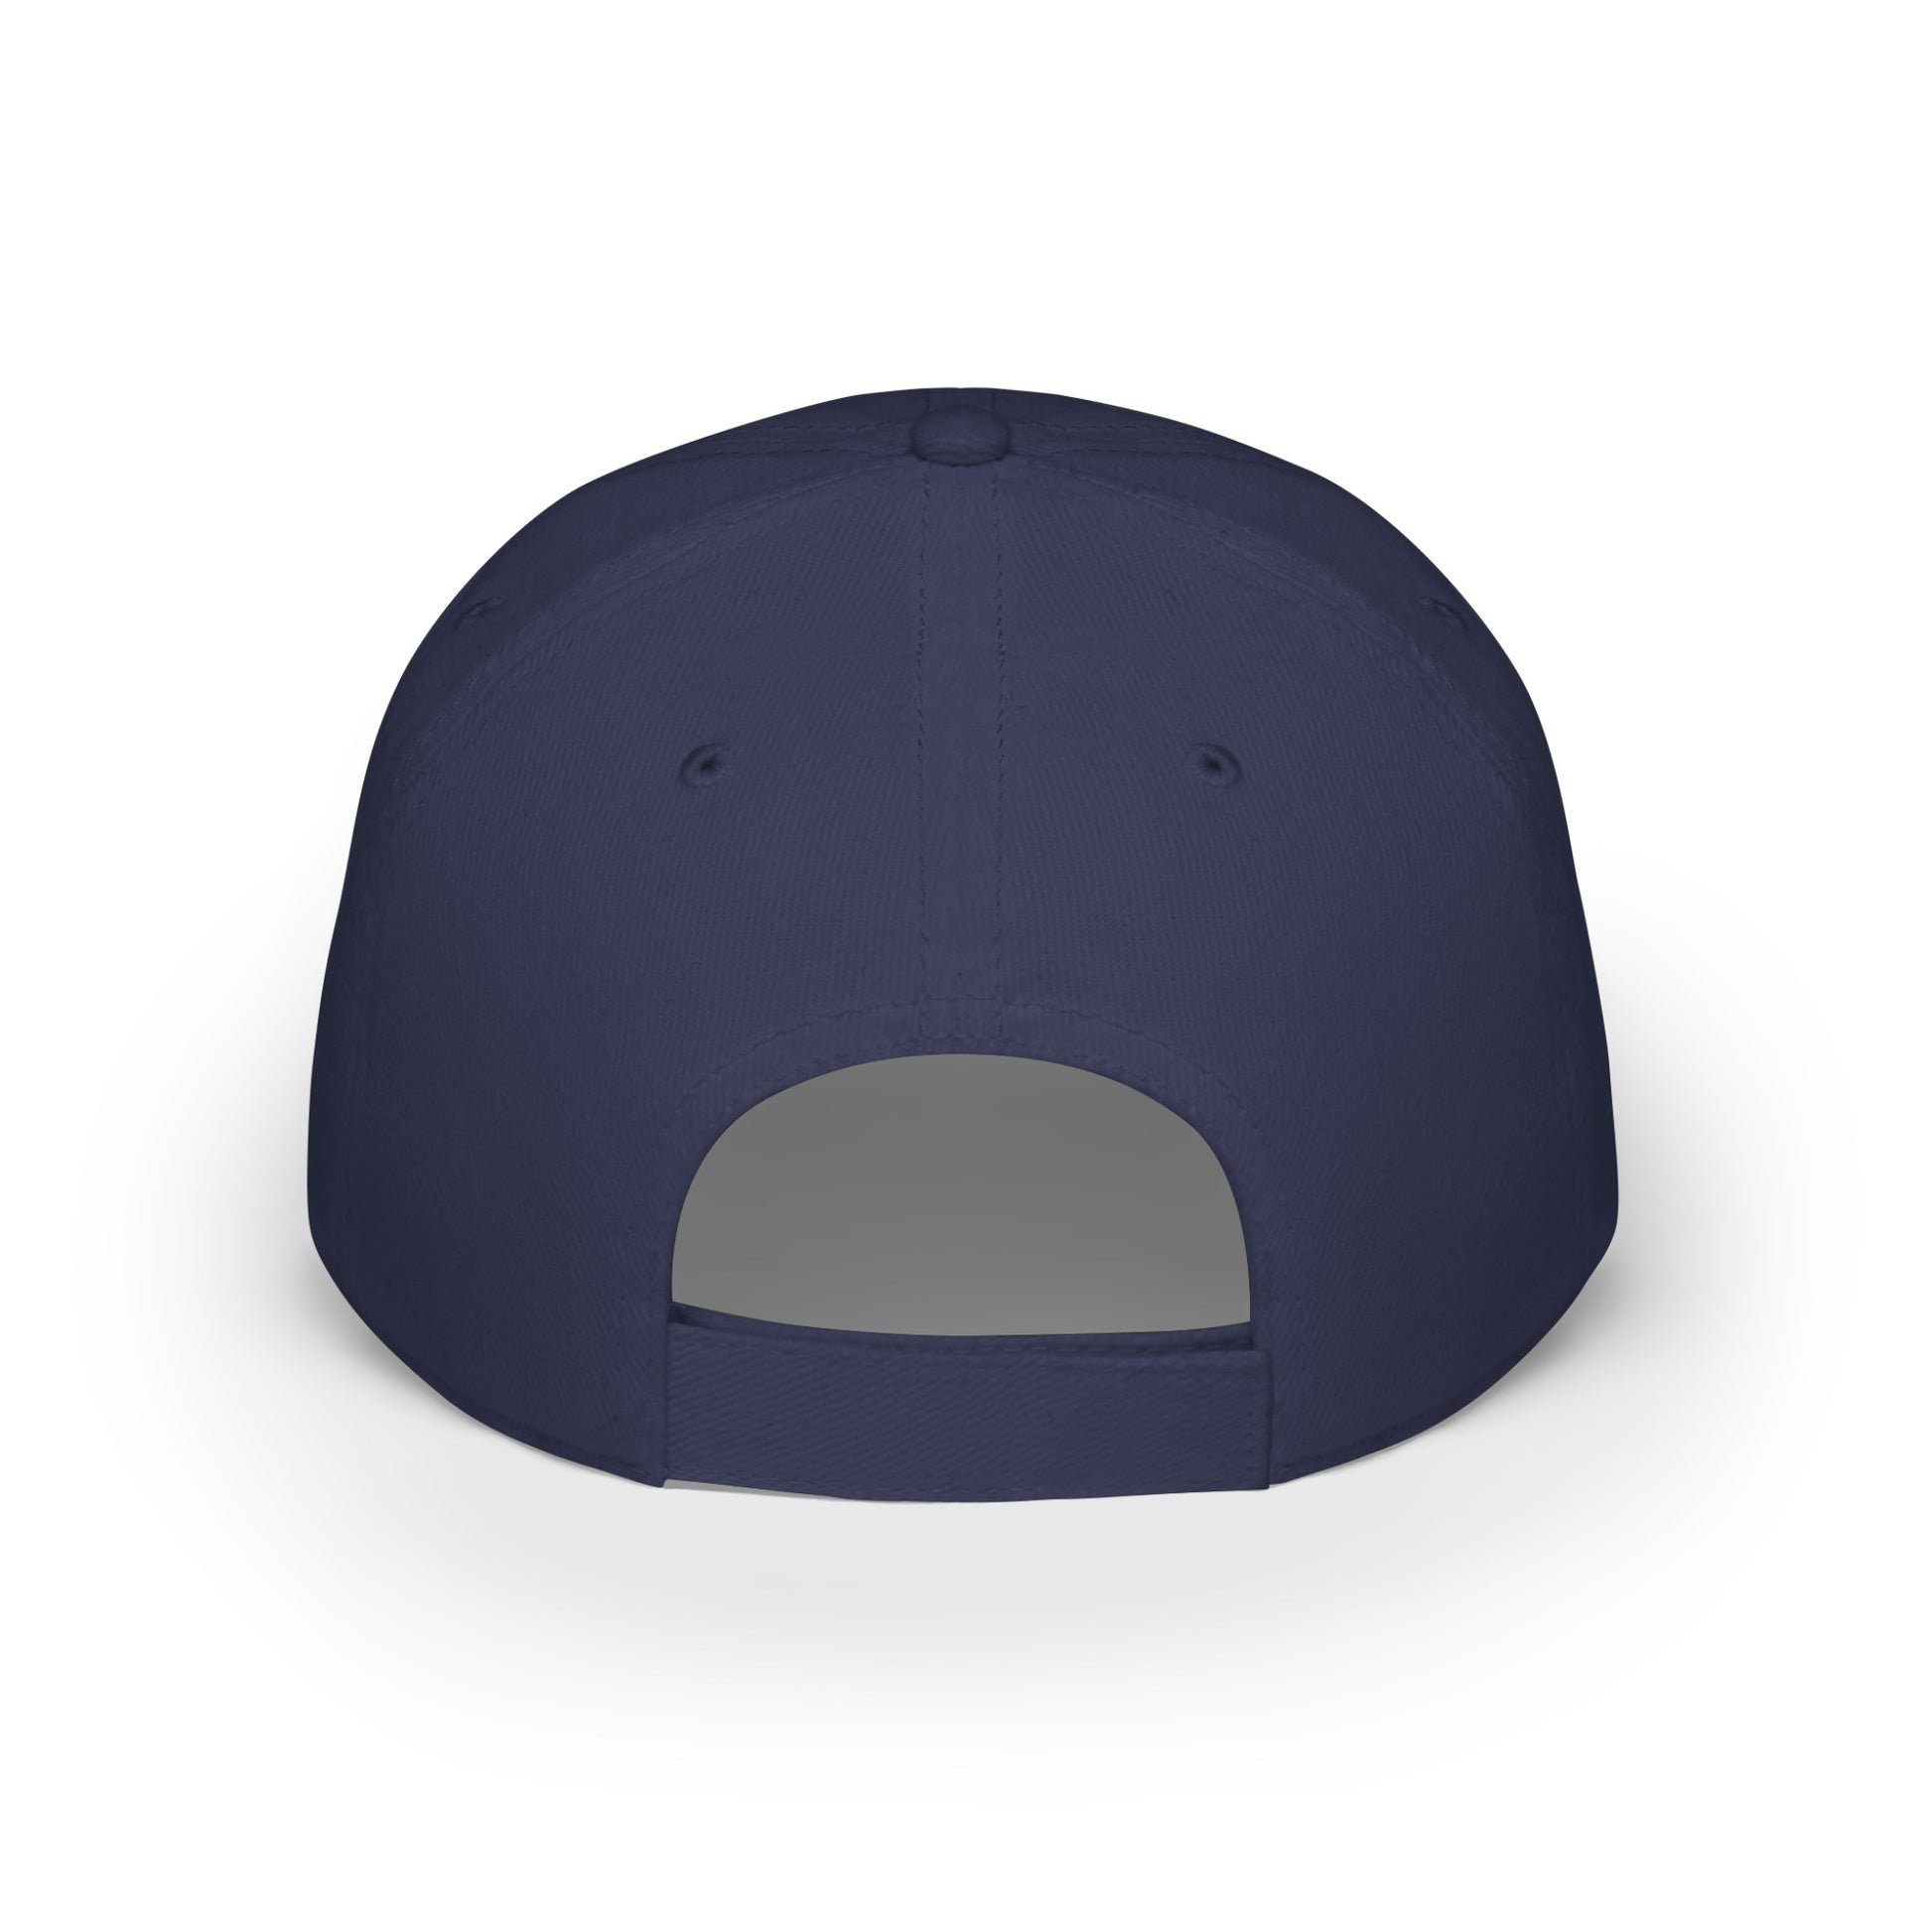 MDBTDJ#PSBC - Low Profile Baseball Cap Tattooed Dj's Limited Edition, Hats, Tattooed Djs Shop